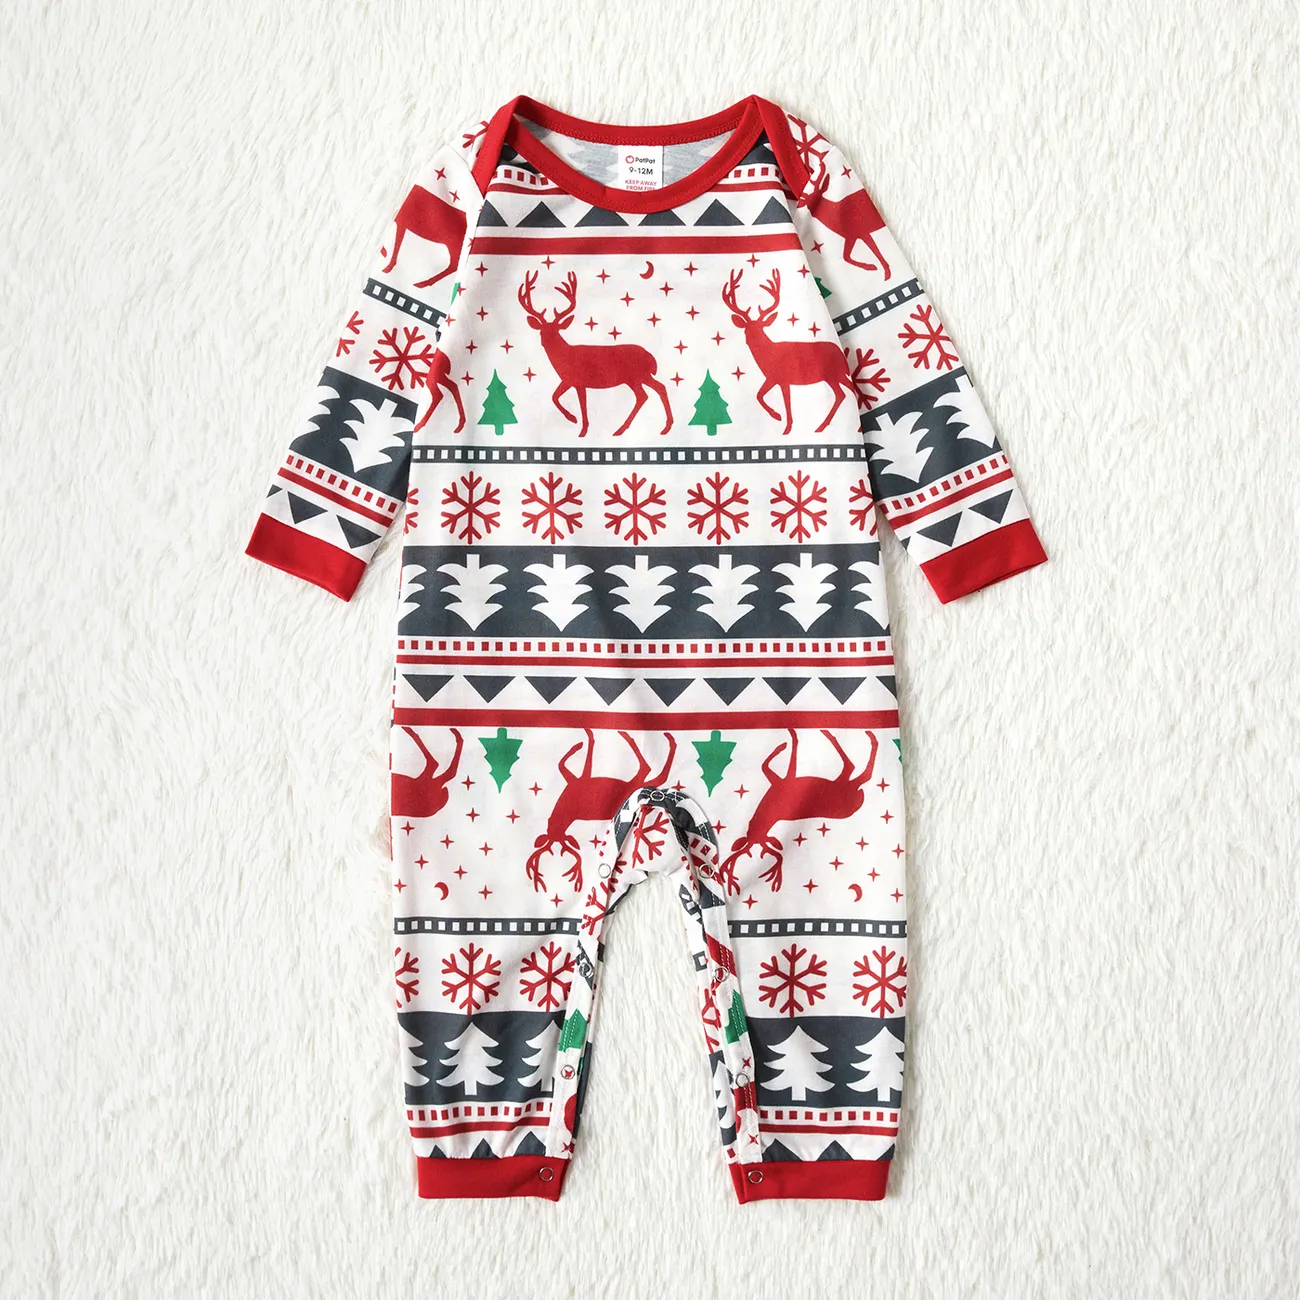 Christmas All Over Reindeer Print Family Matching Long-sleeve Pajamas Sets (Flame Resistant)  big image 1